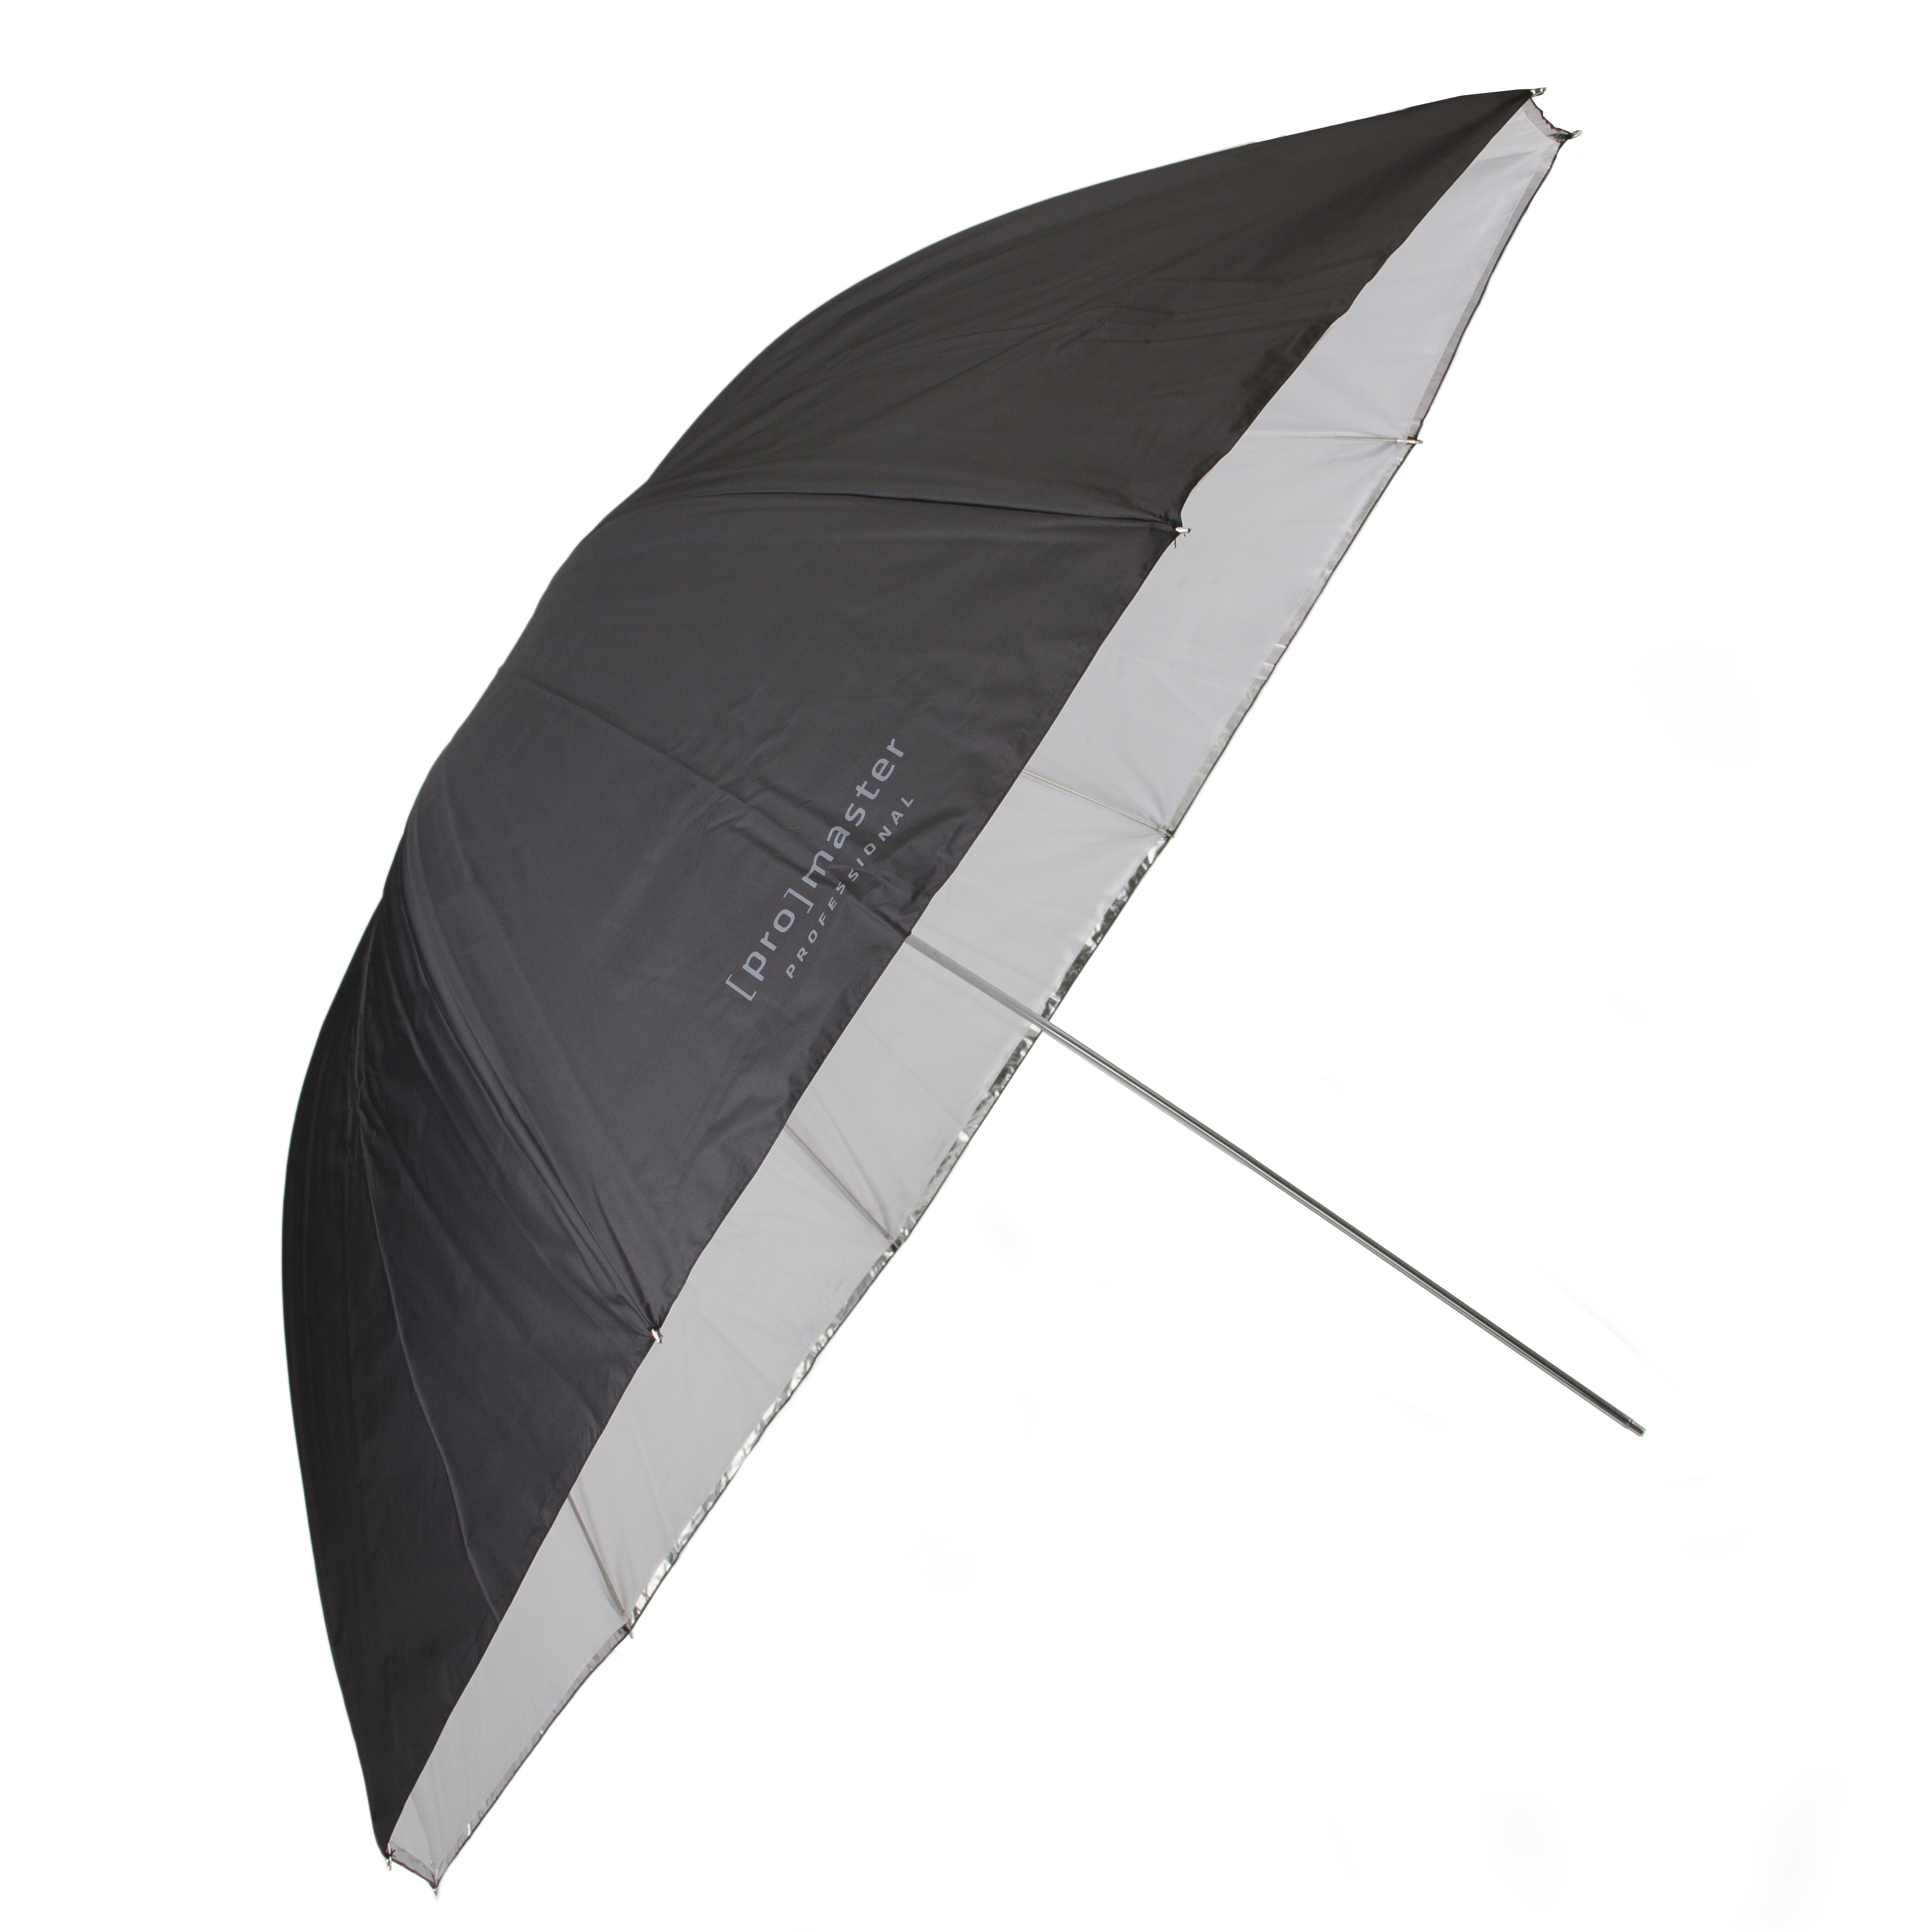 Promaster 9272 60" Convertible Professional Umbrella (Silver/Black, White)